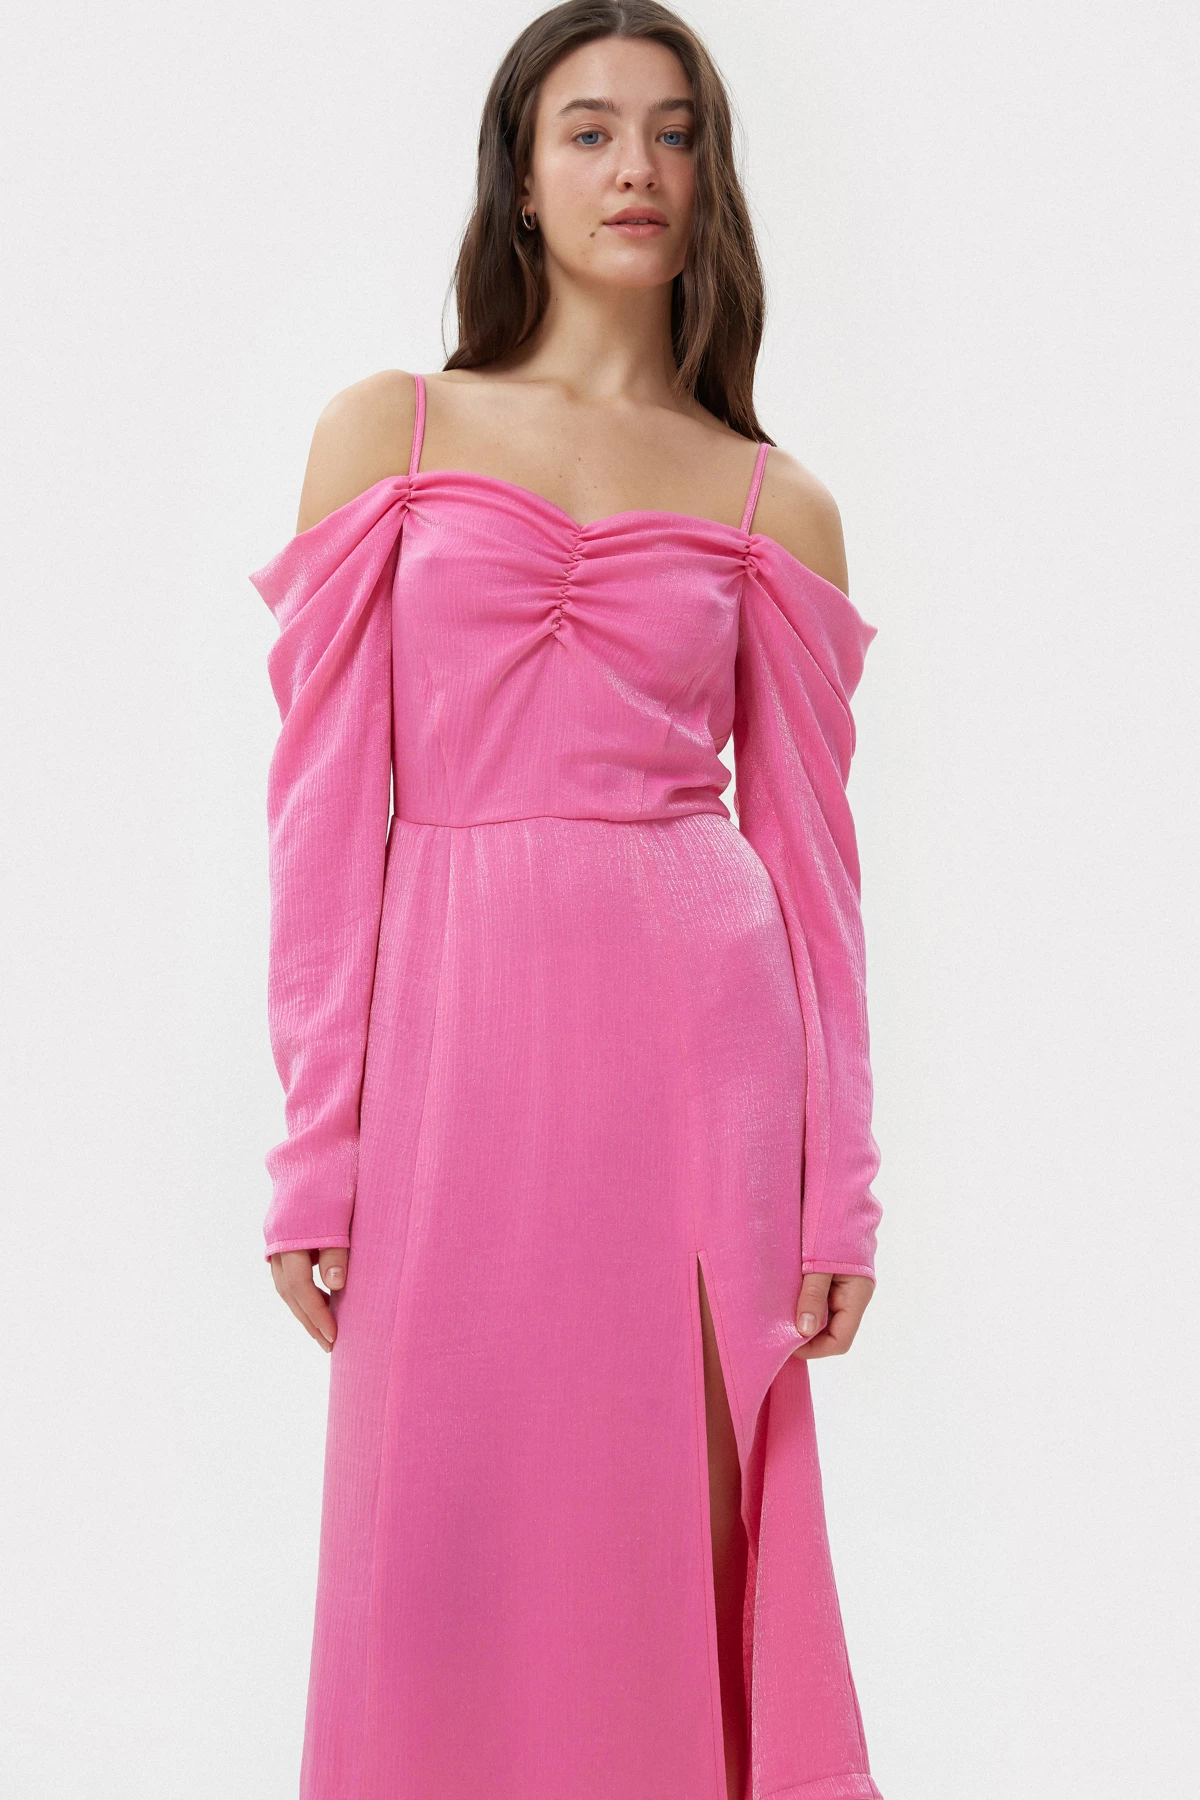 Платье длины миди из вискозного креш-сатина цвета фуксия, фото 1